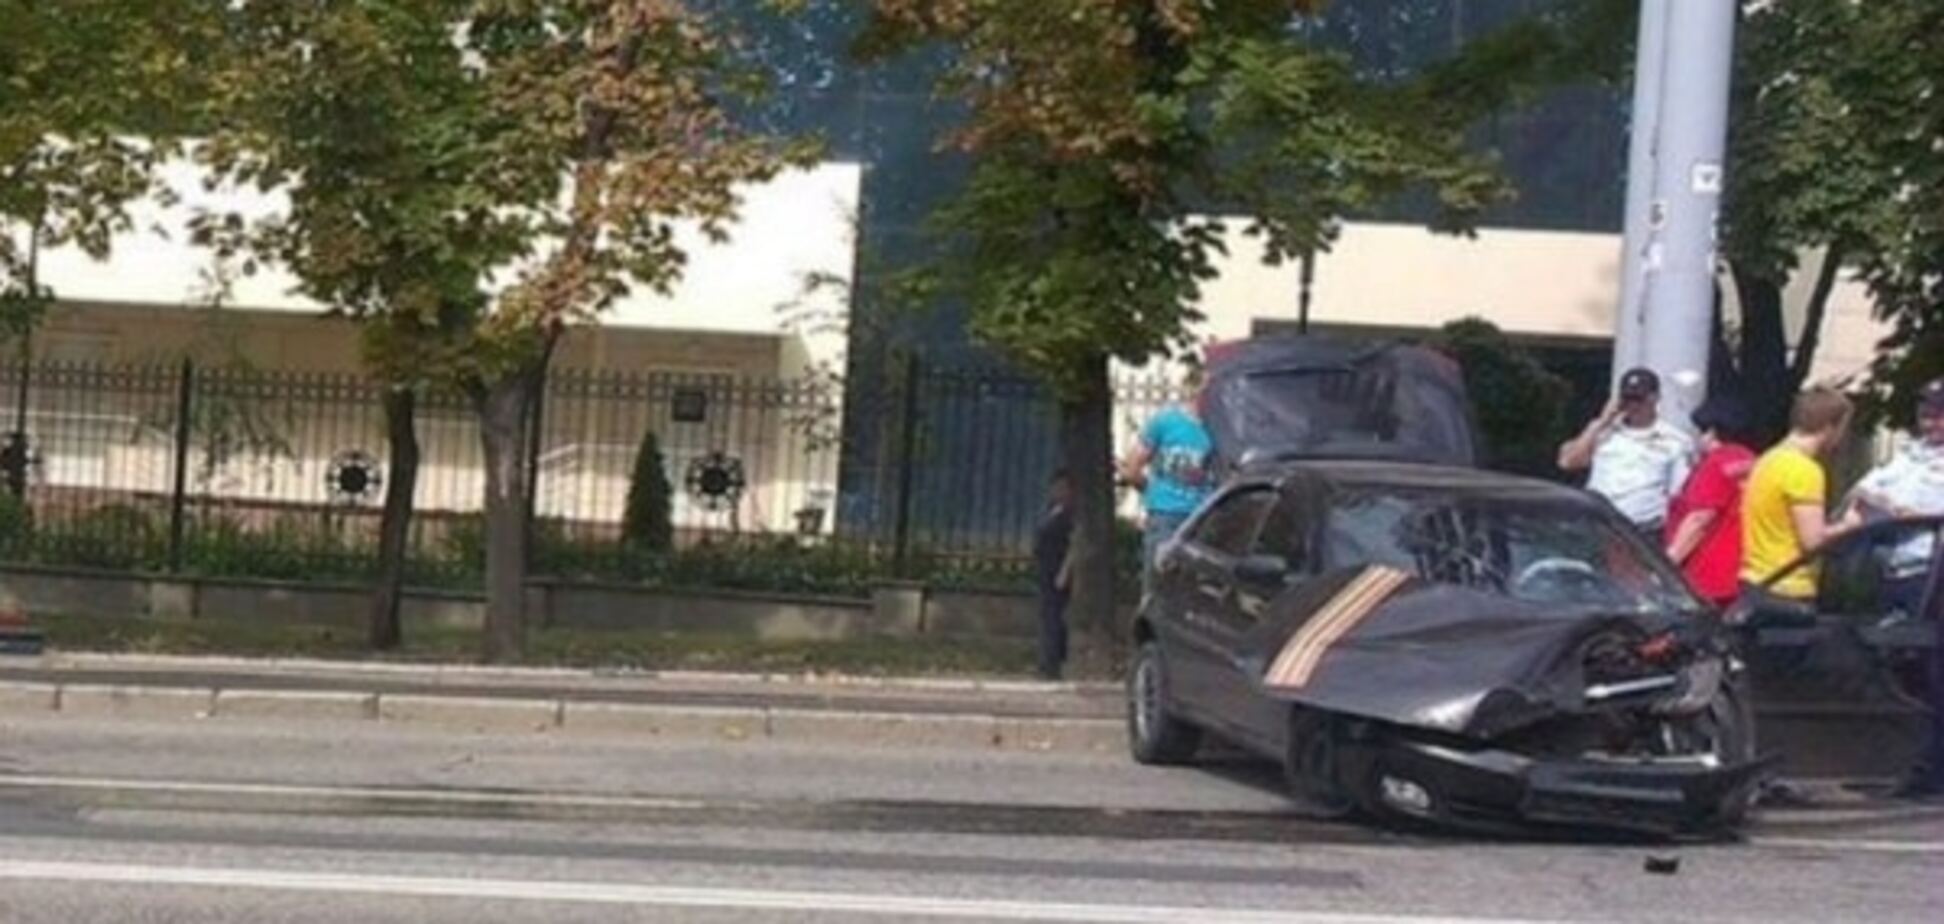 Авто всмятку: в полупустом Донецке лихач убил девушку-пешехода. Фото ДТП